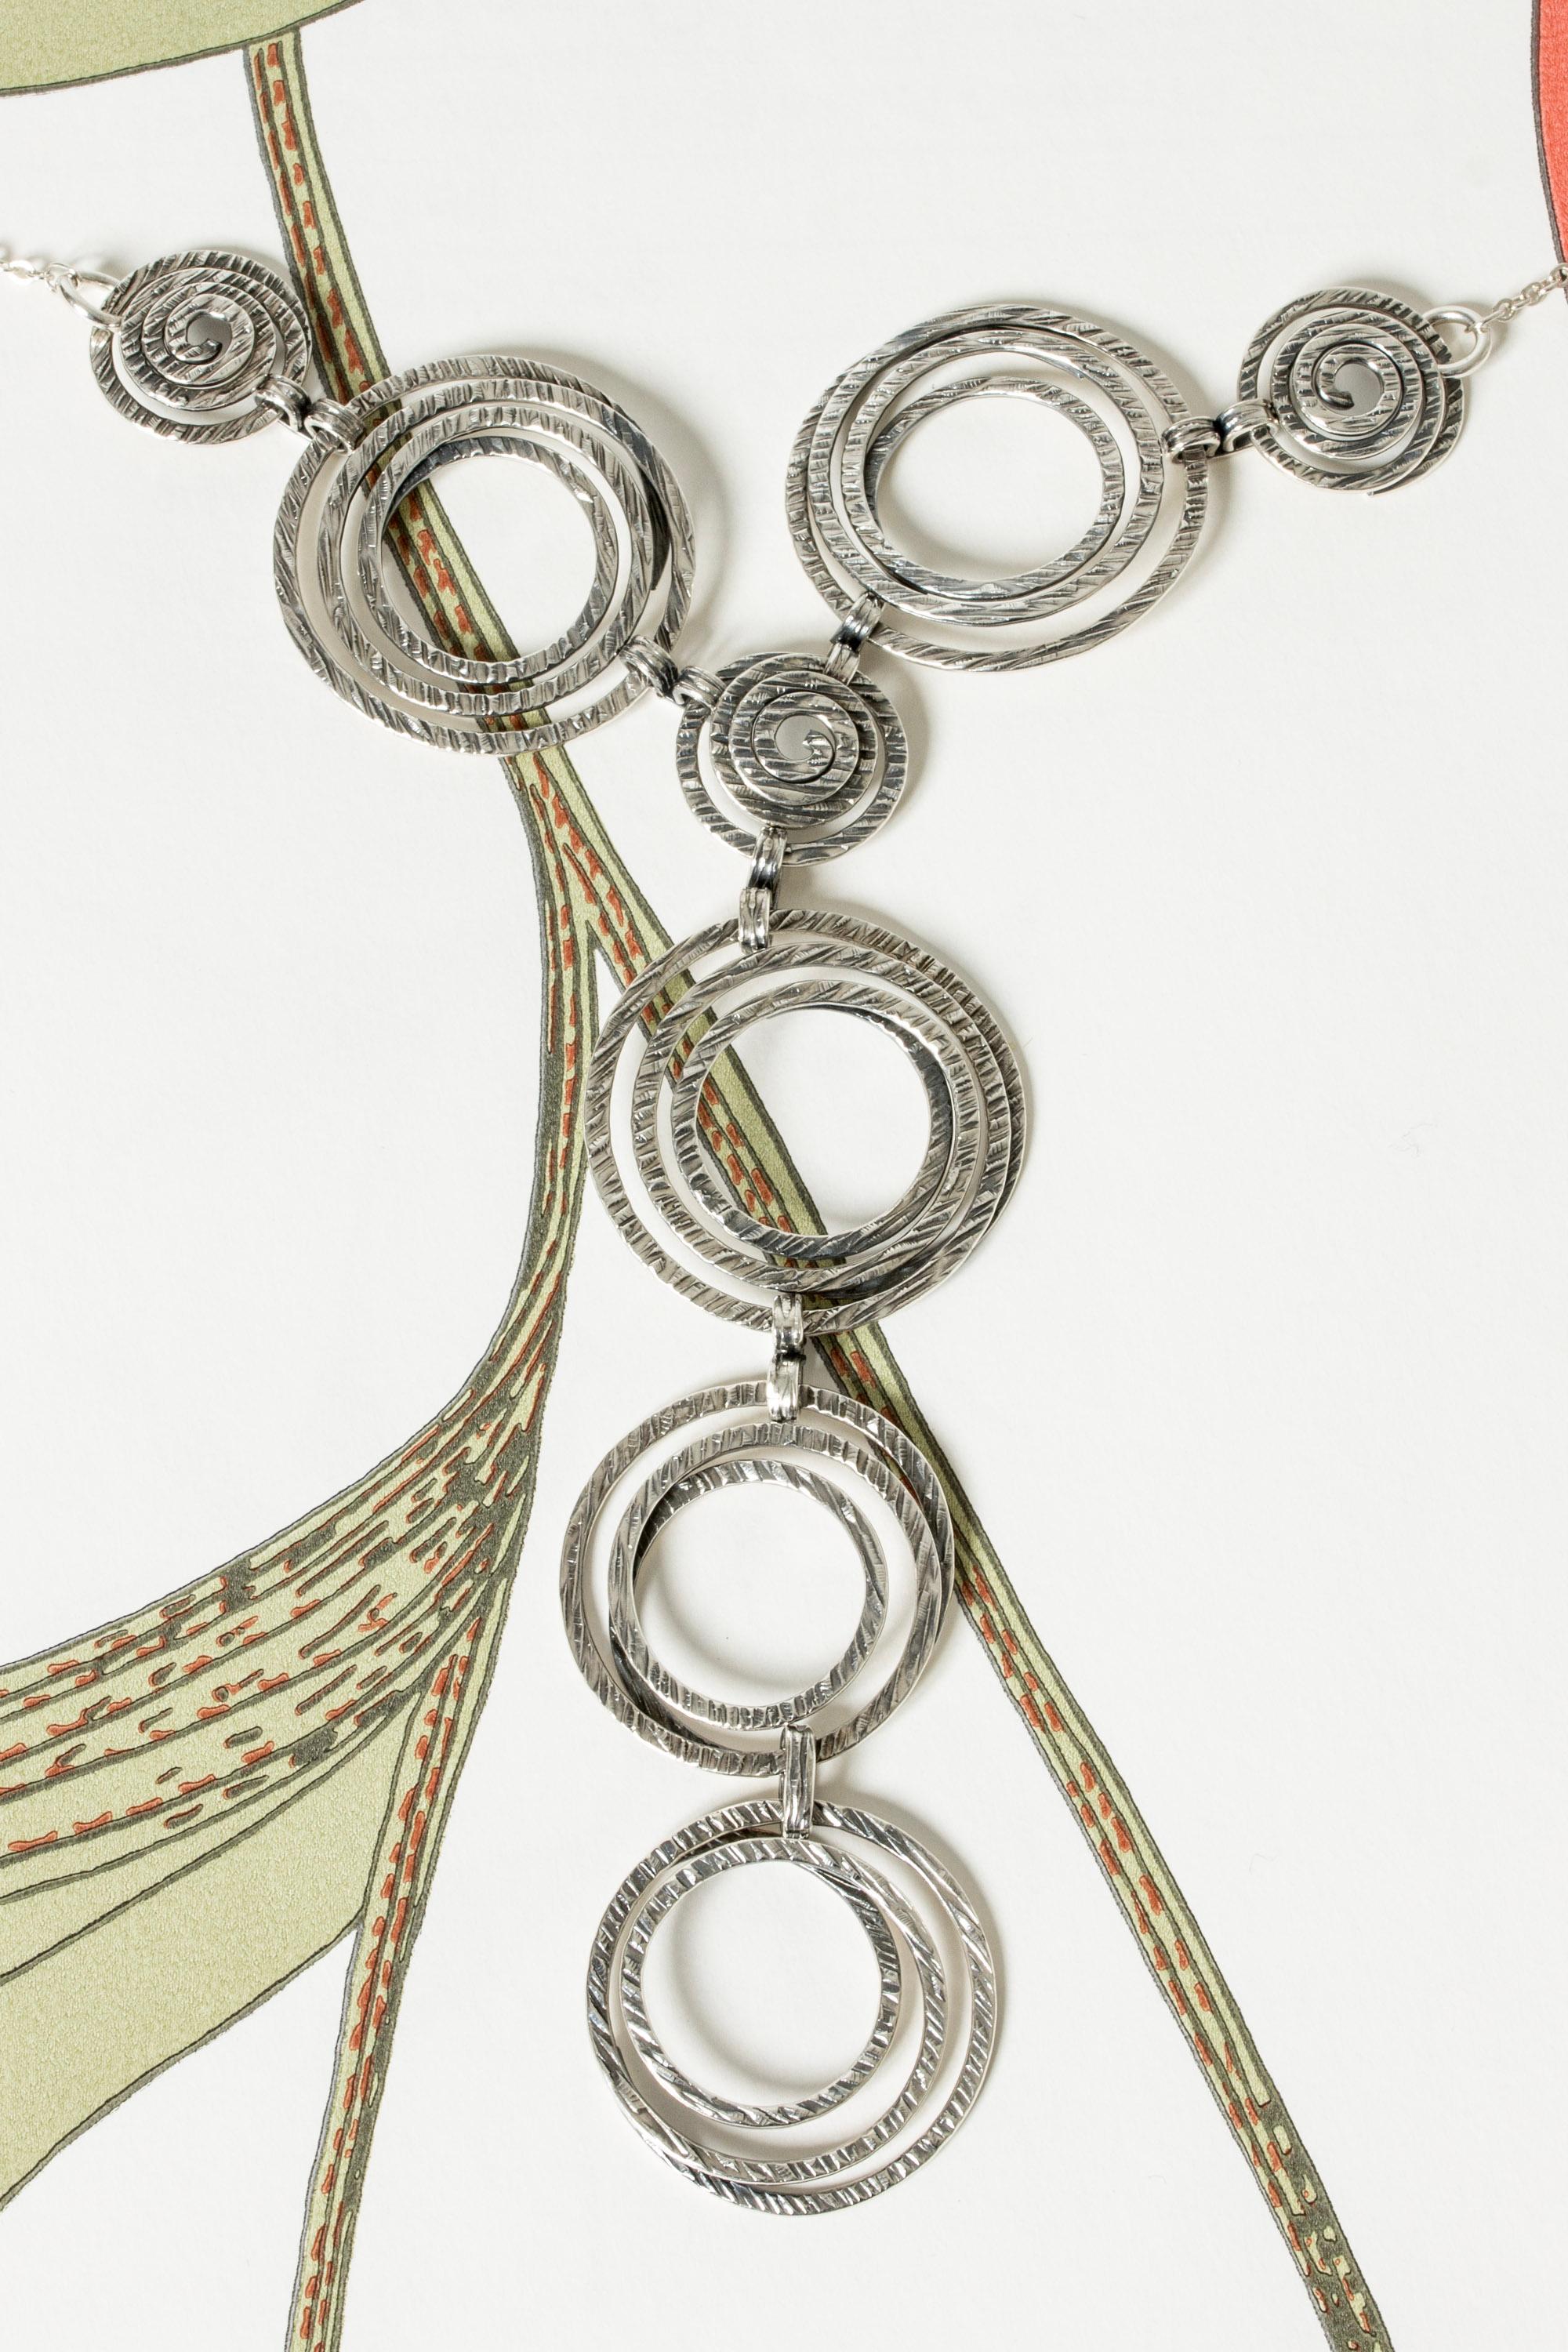 Auffallendes modernistisches Silbercollier von Elis Kauppi mit einem großen Anhänger aus Spiralen. Die Spiralen haben eine raue Oberfläche und einen subtilen folkloristischen Touch. Sieht mit einem tiefen Ausschnitt fantastisch aus.

Länge der Kette